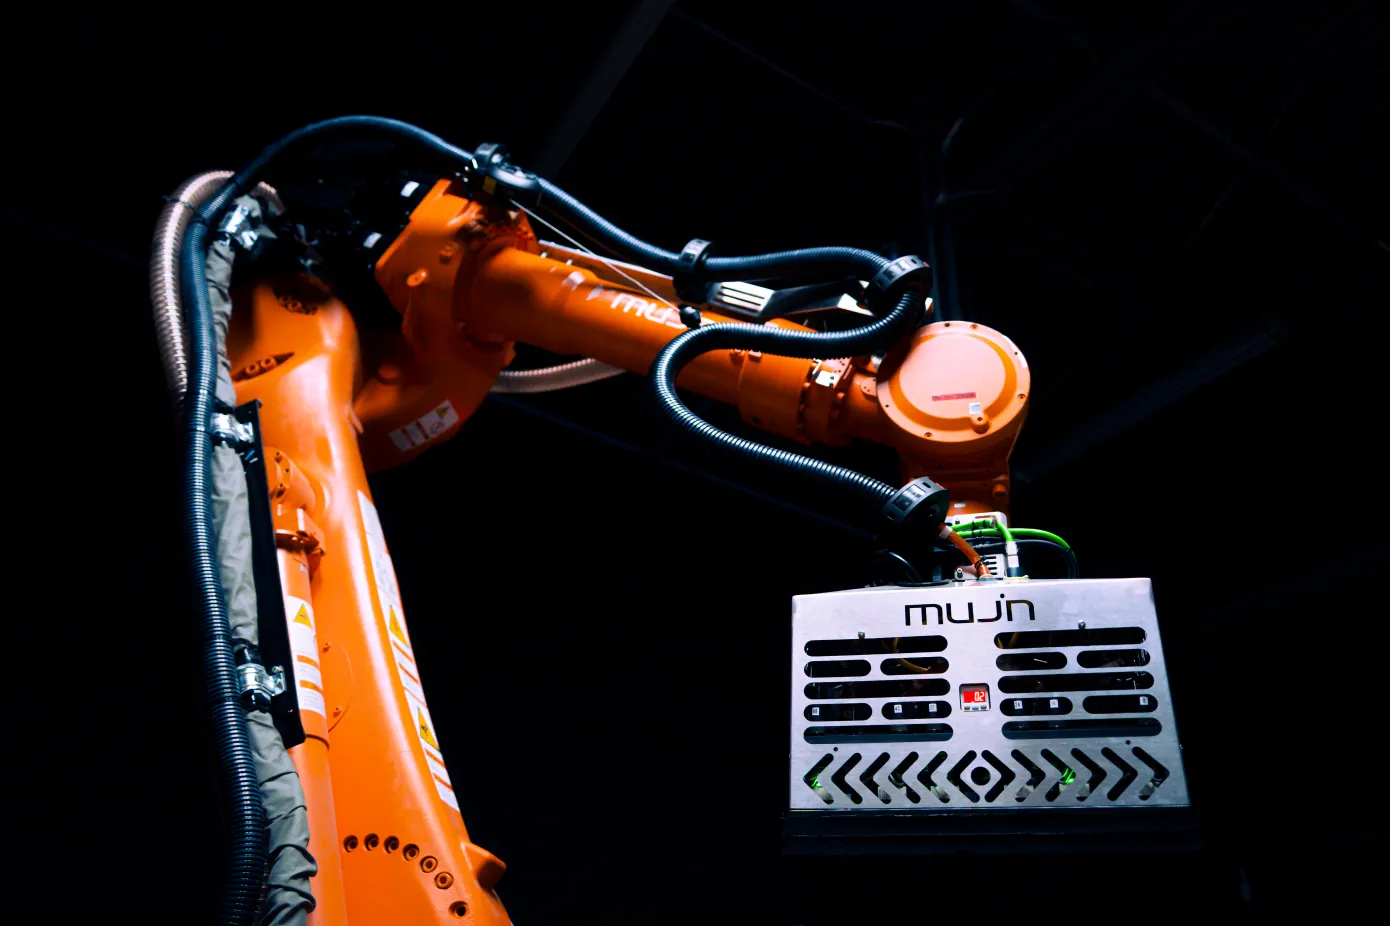 Robotsoftwareontwikkelaar Mujin heeft 85 miljoen dollar aan financiering opgehaald